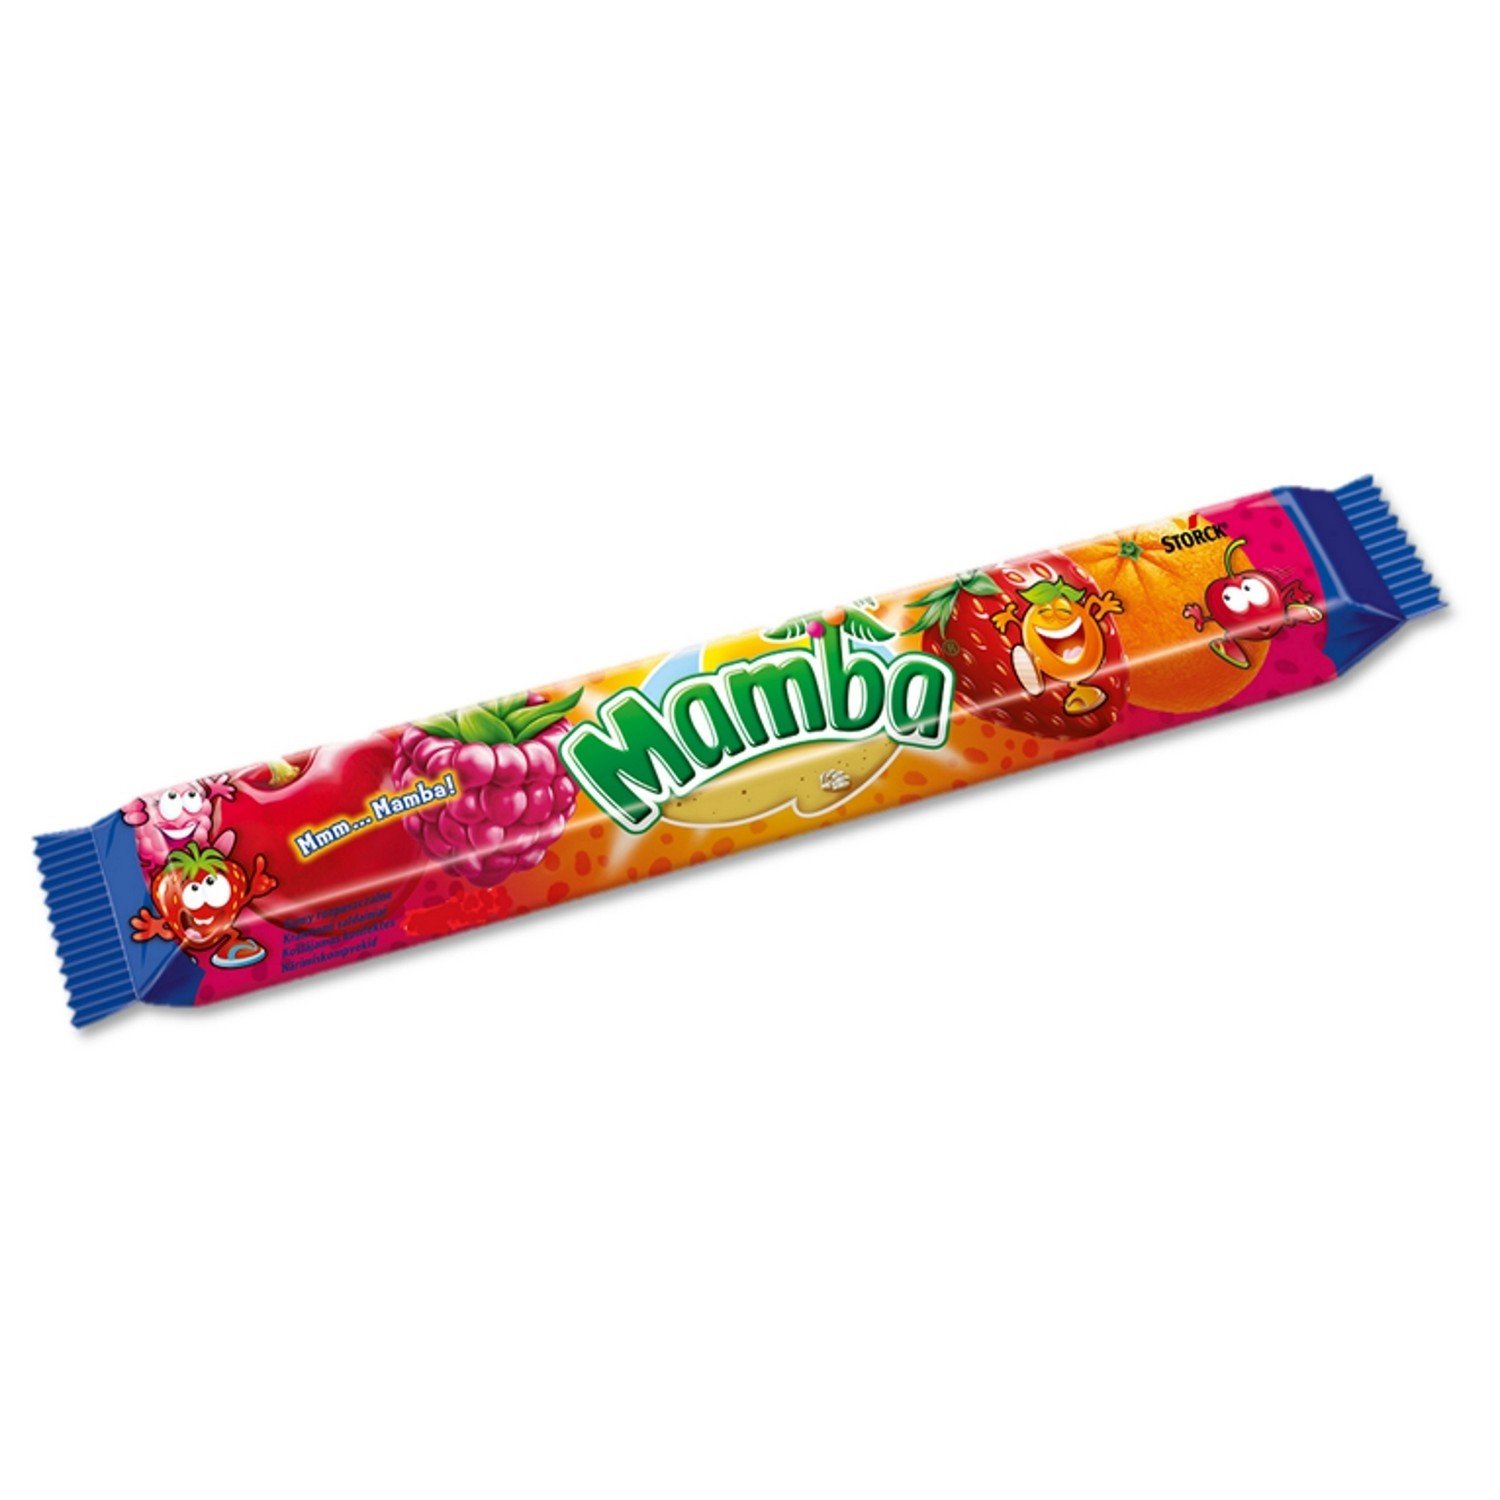 Жевательная конфета Mamba со вкусом фруктов, 79,5 г конфета goodmix со вкусом хрустящего печенья 47 гр